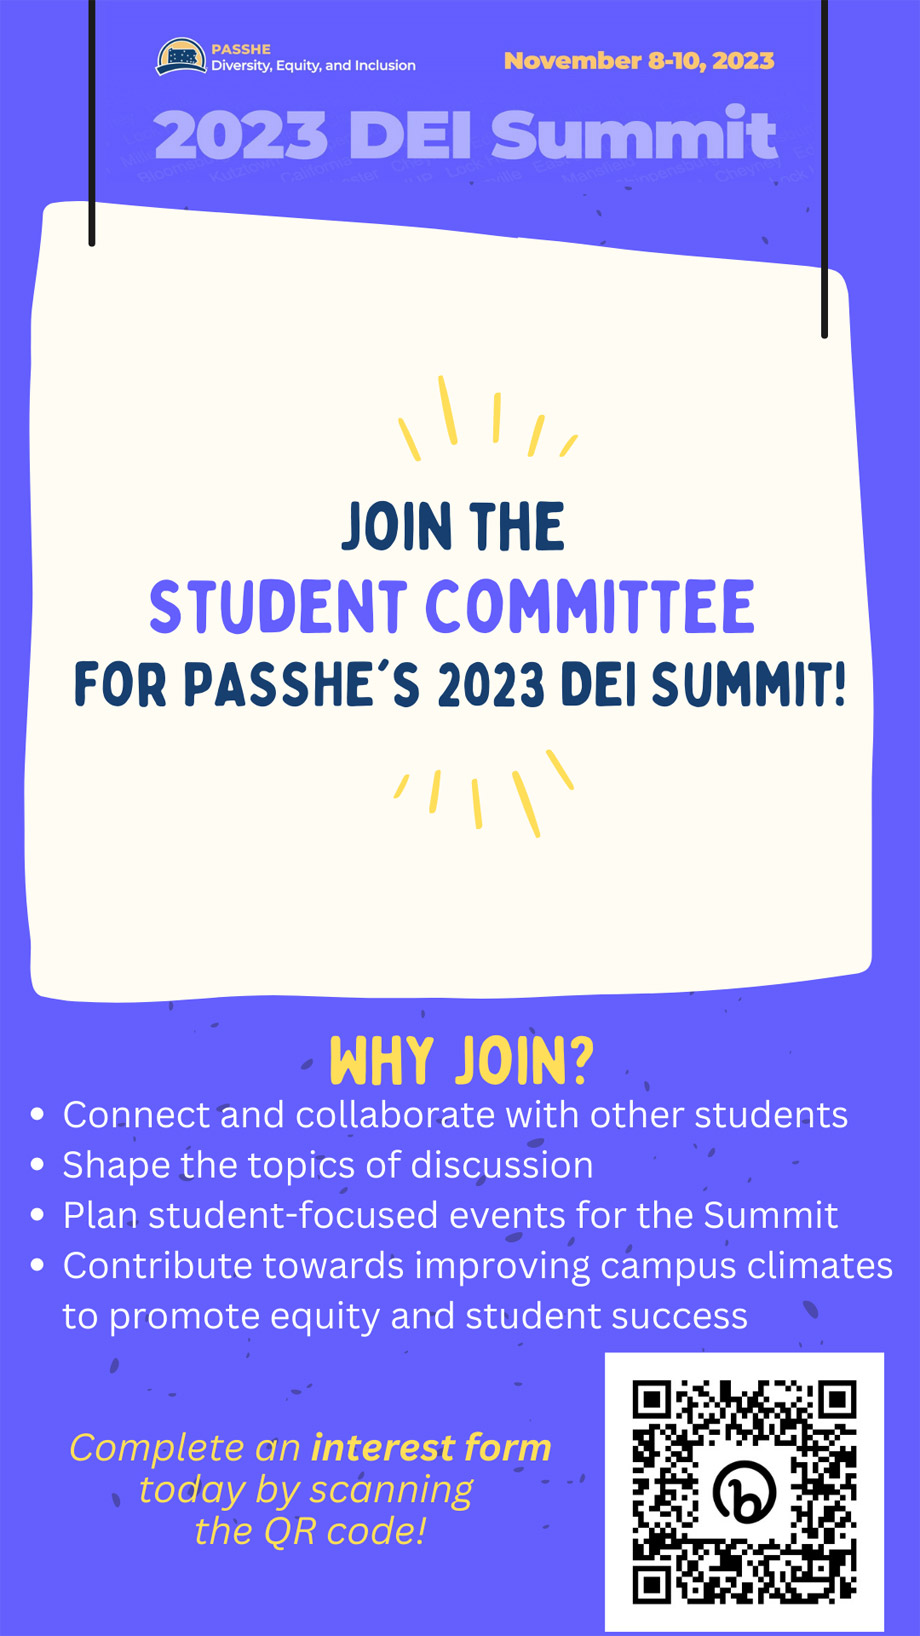 Join the Student Committee - DEI Summit 2023